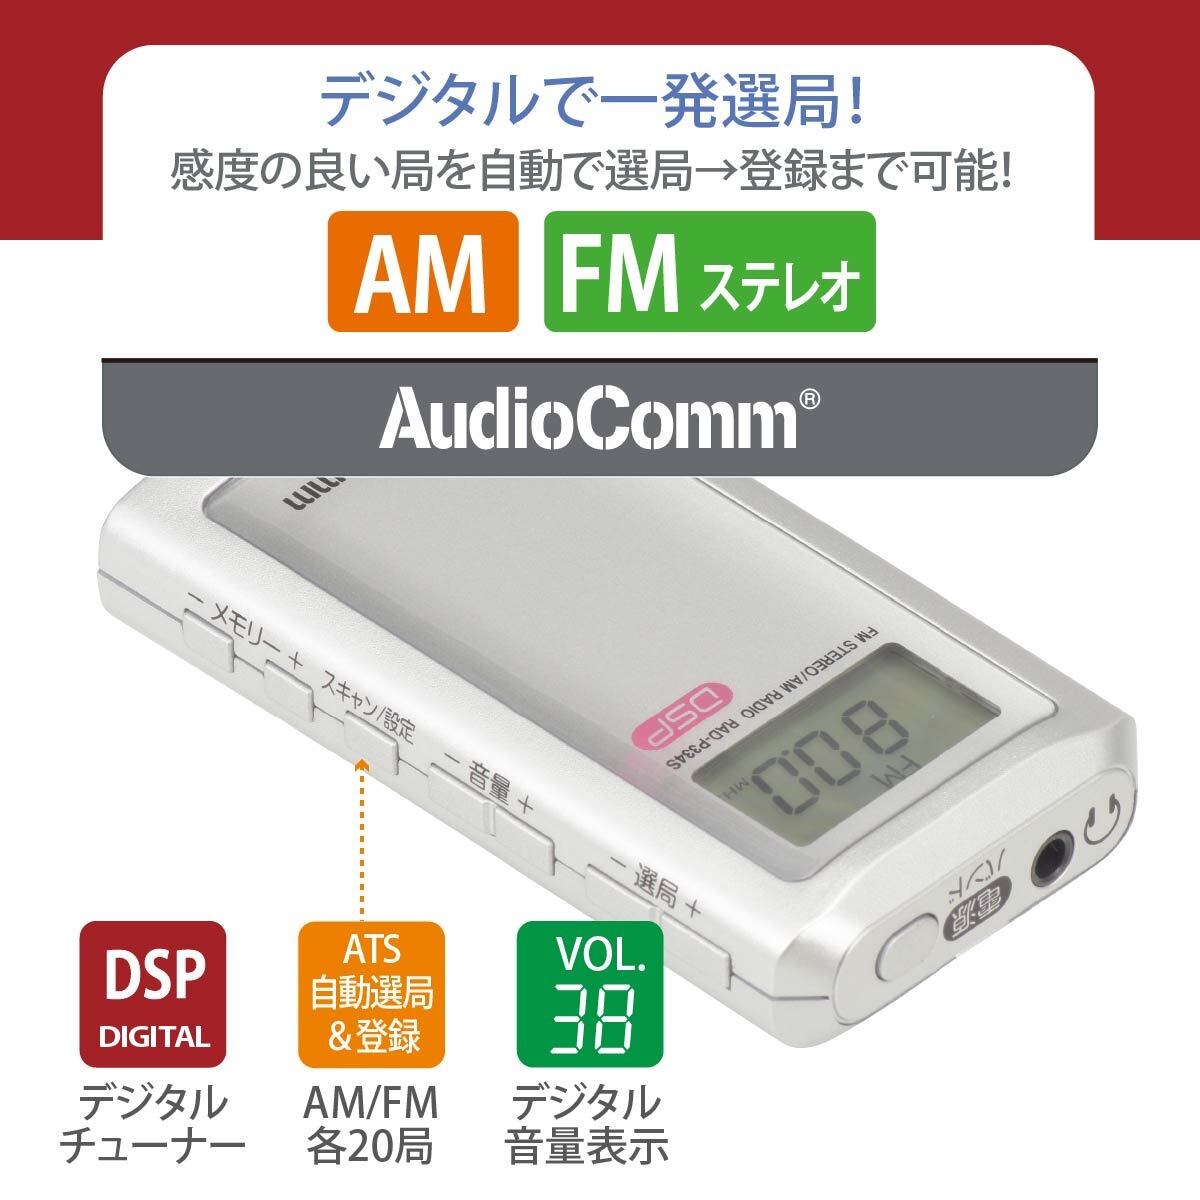 ラジオ ライターサイズラジオ シルバー AudioComm｜RAD-P334S-S 03-0970 オーム電機_画像2